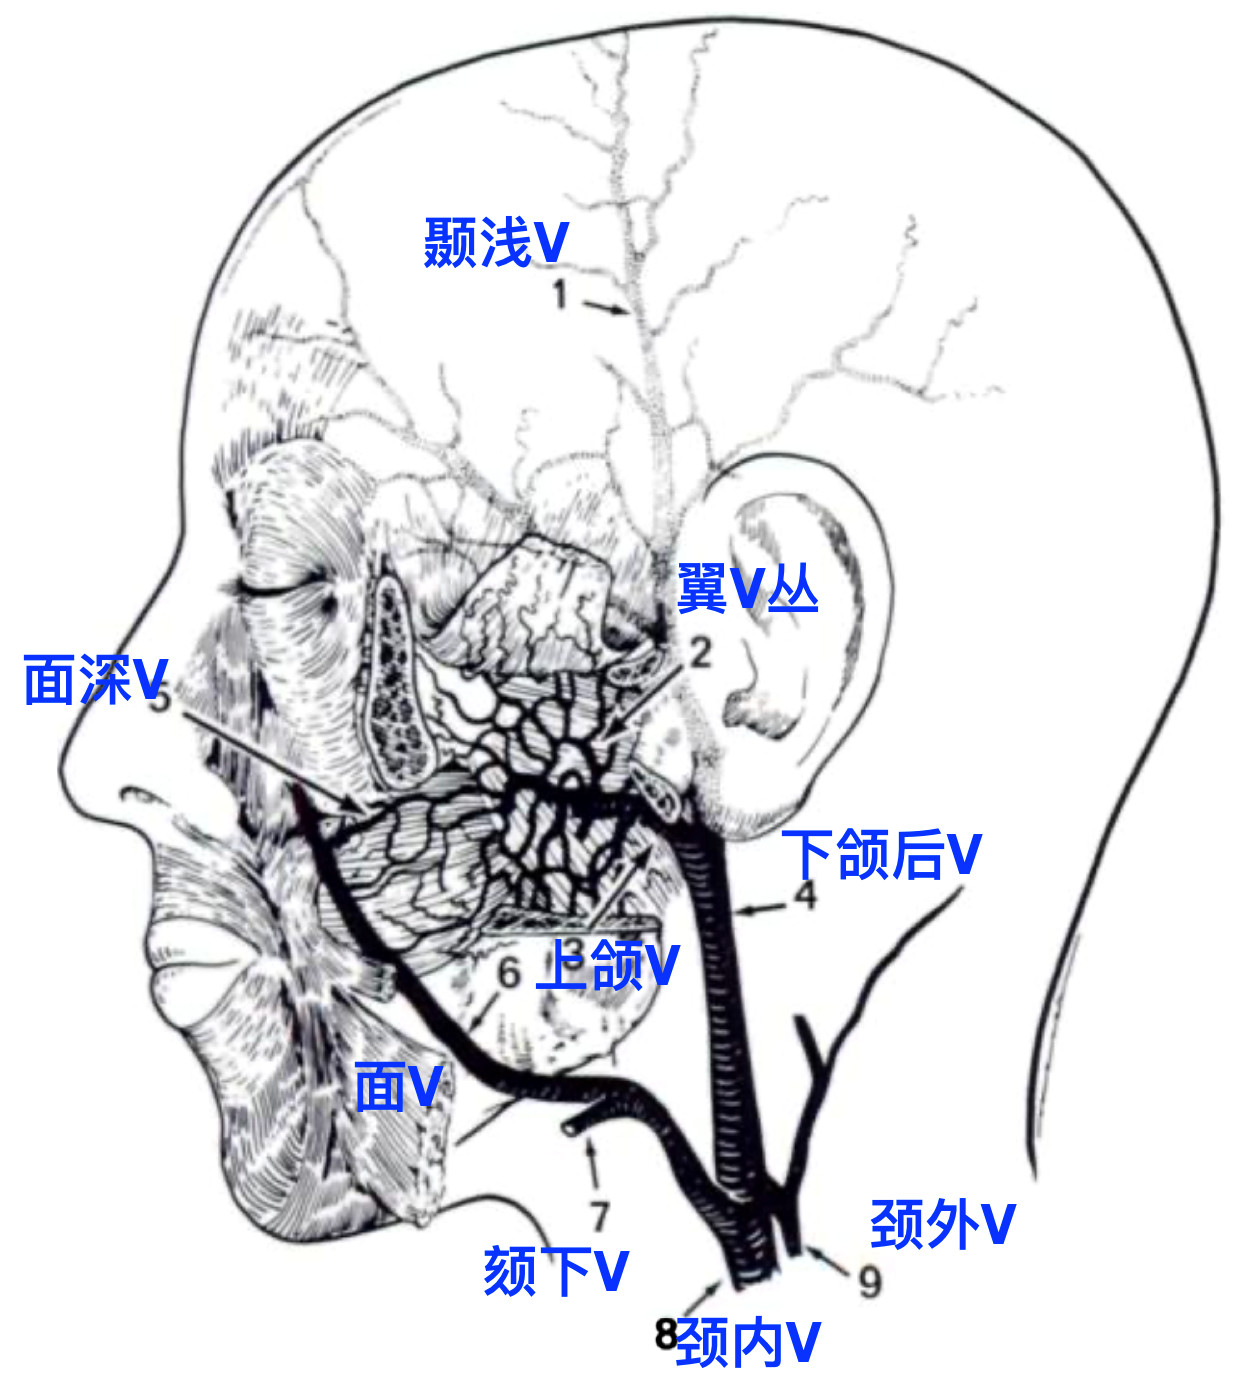 脑血管解剖学习笔记第43期：眼动脉大体解剖 - 脑医汇 - 神外资讯 - 神介资讯